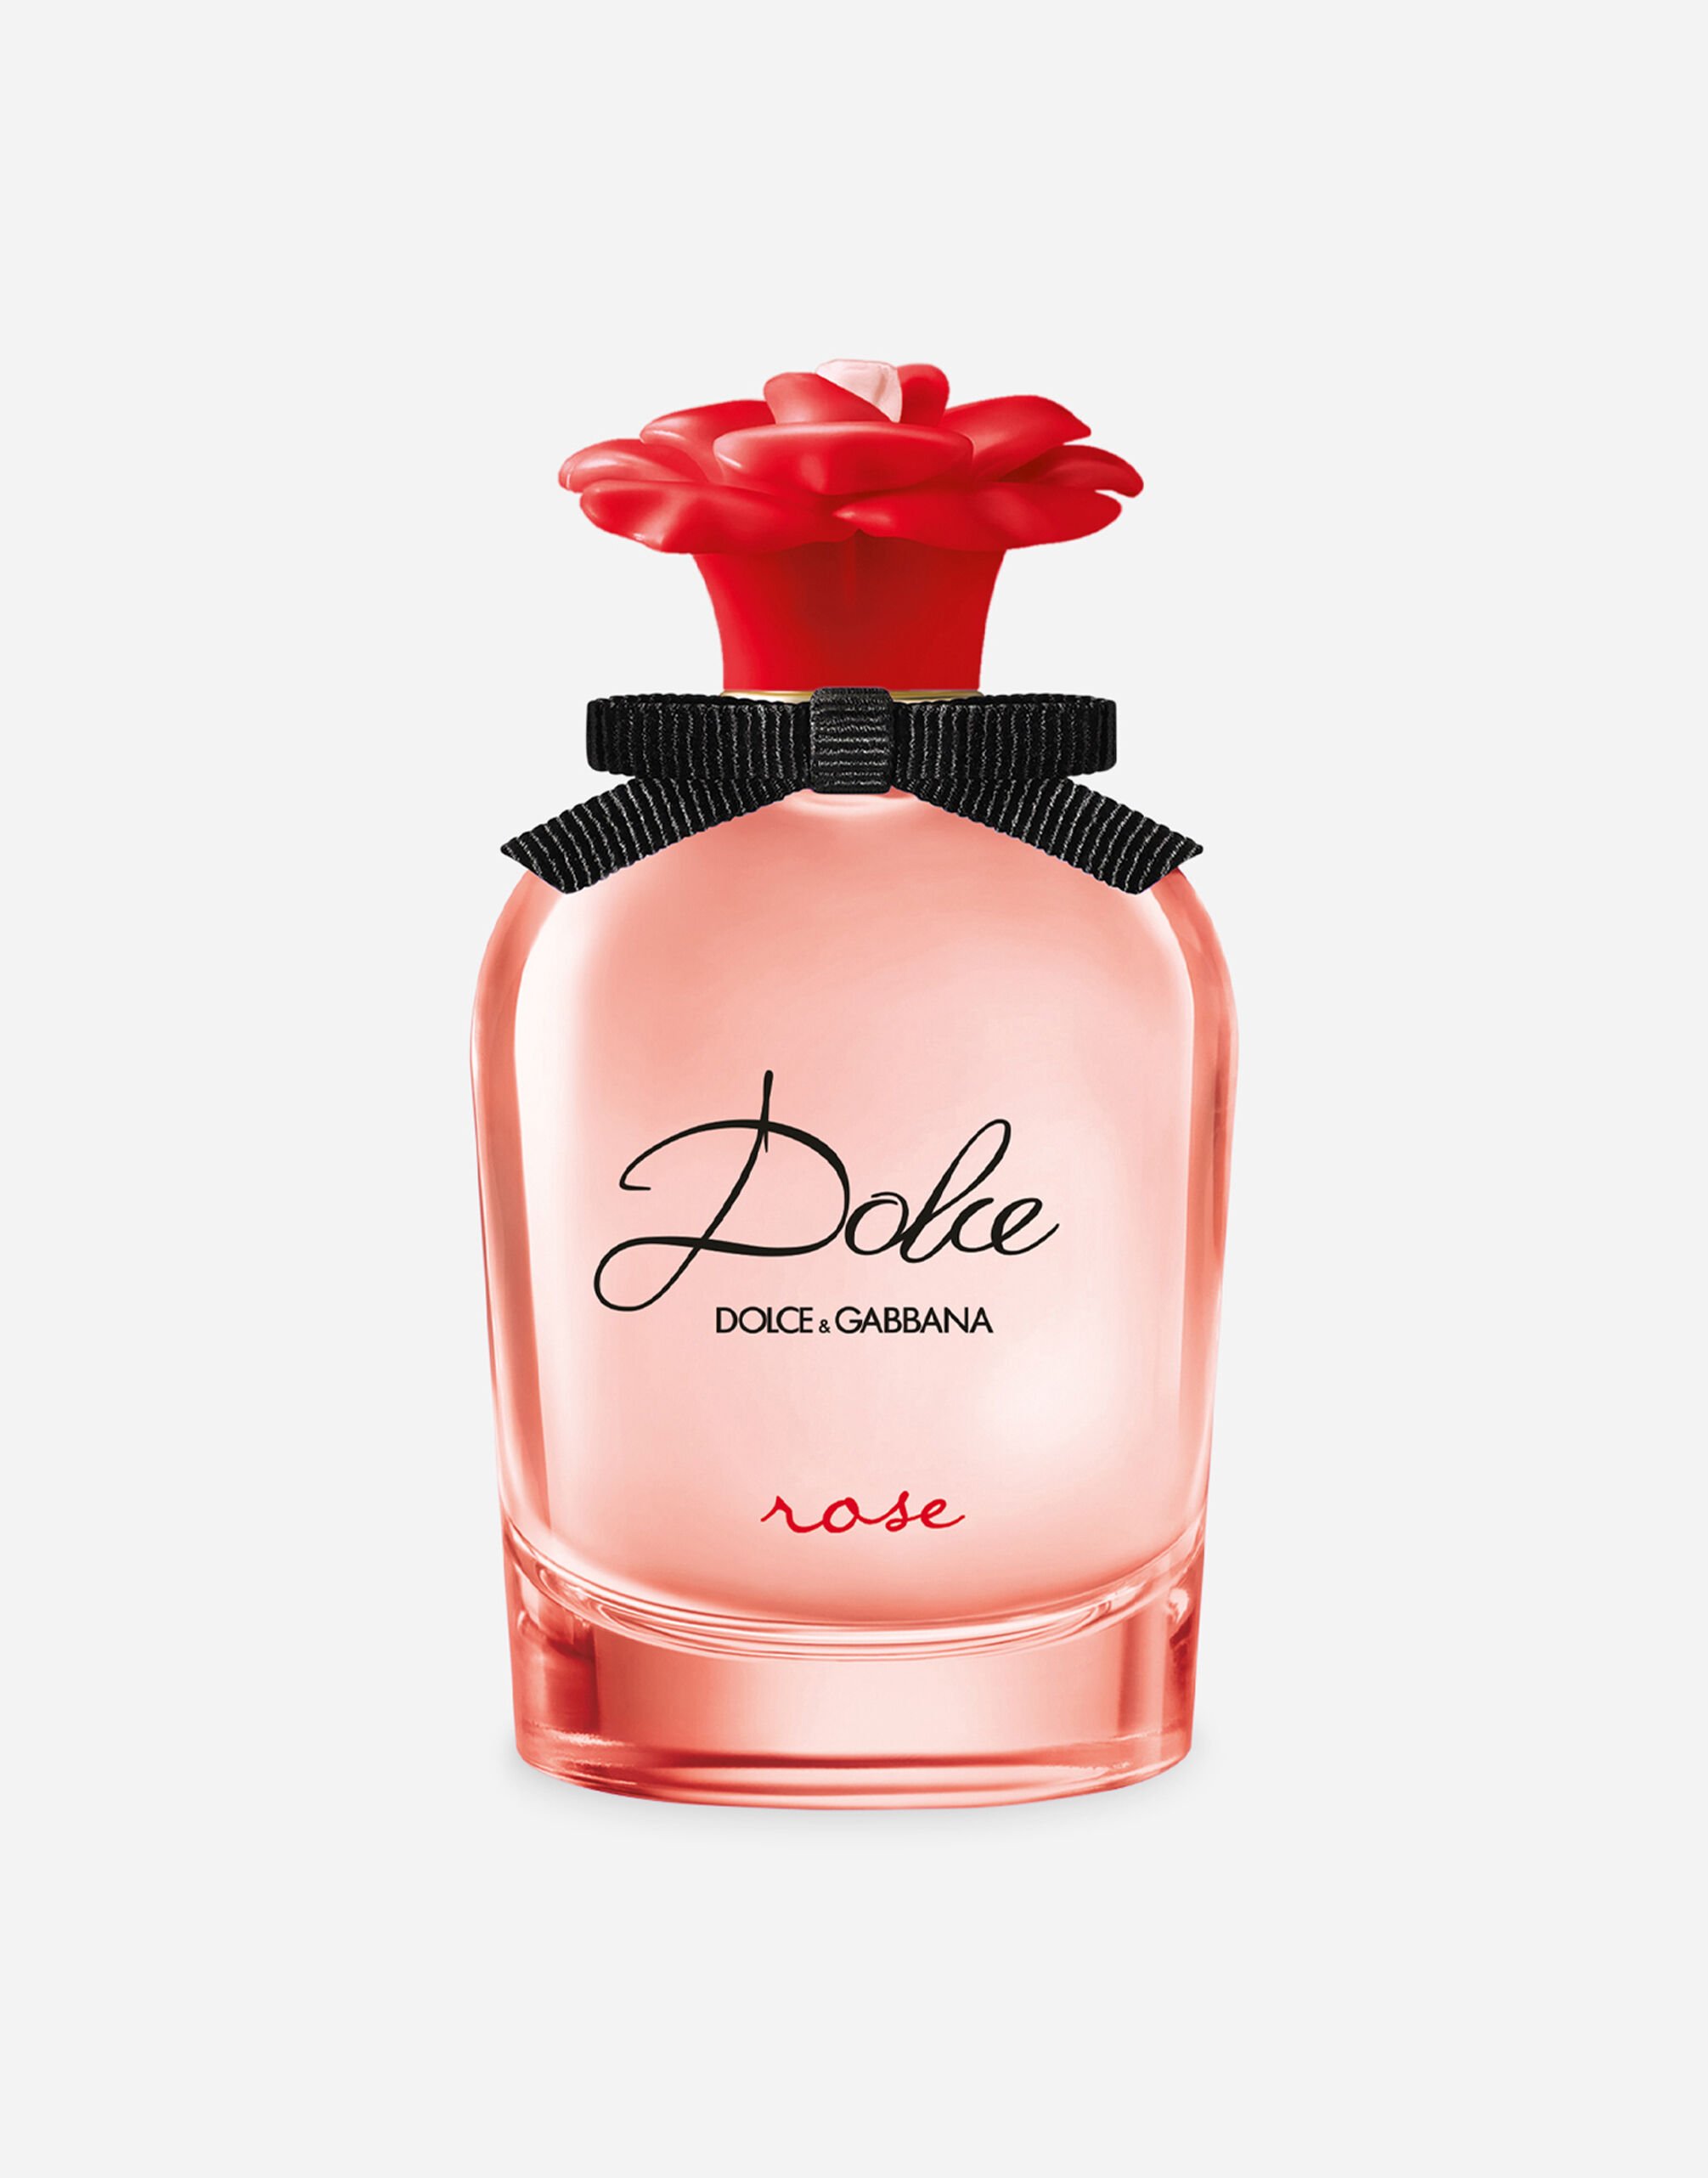 Dolce & Gabbana Dolce Rose Eau de Toilette - VP000WVP000